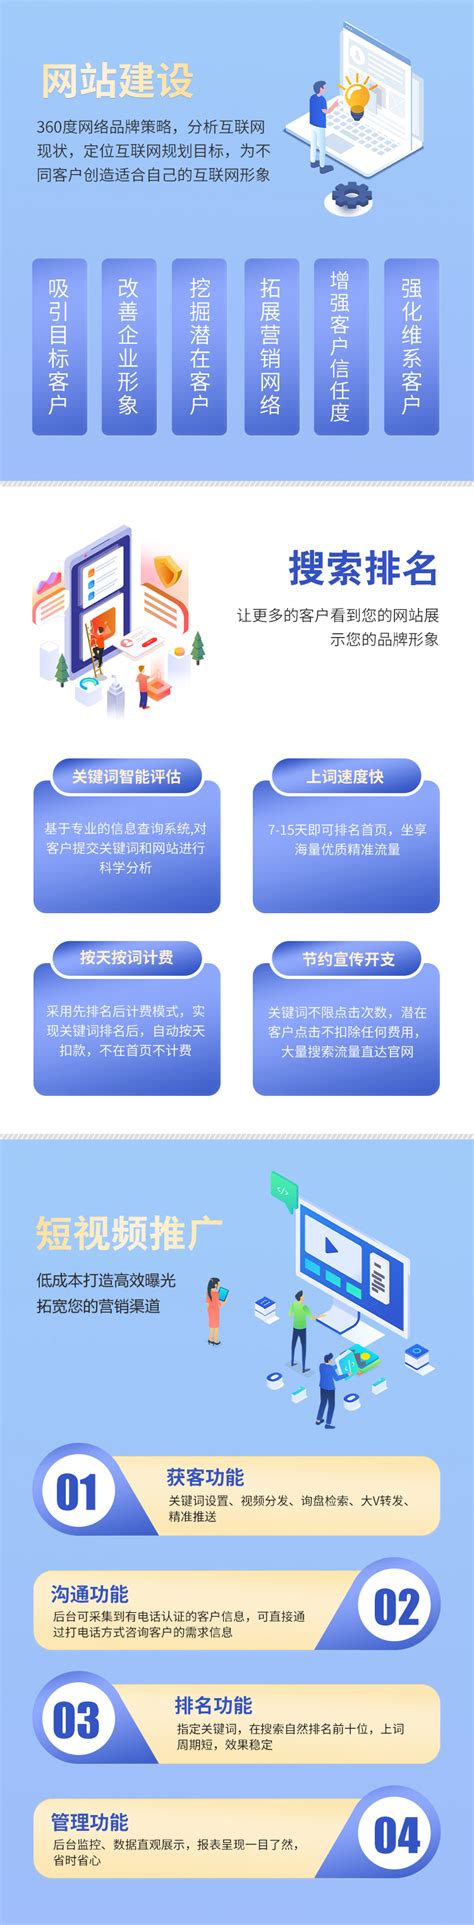 广东网络推广服务机构